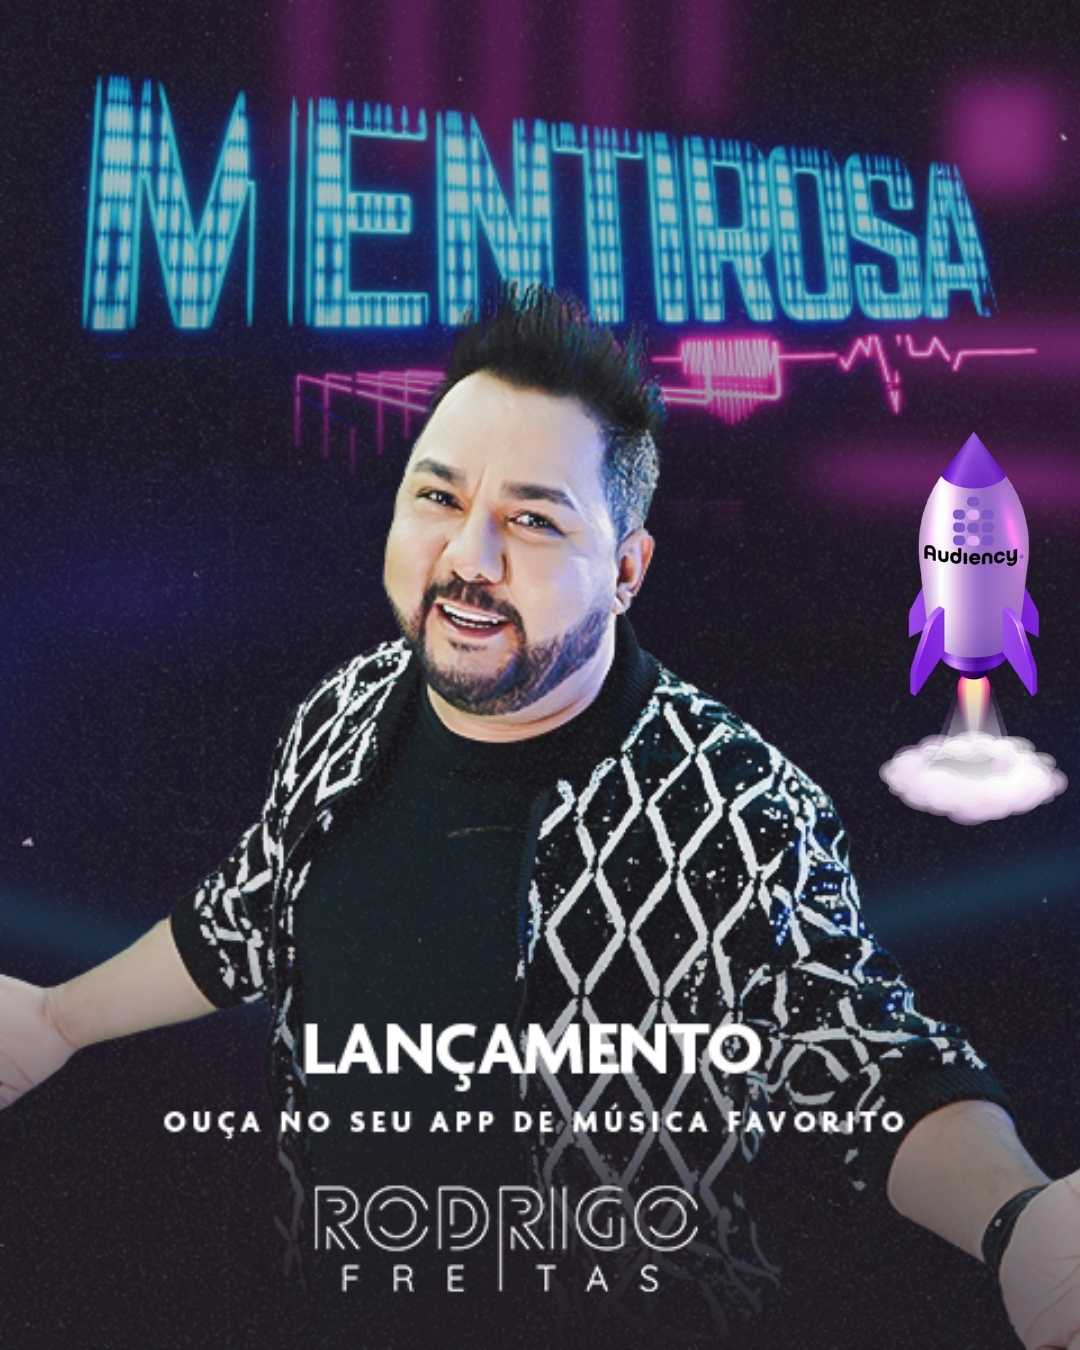 Rodrigo freitas lança a música mentirosa nas rádios do Brasil pela Audiency